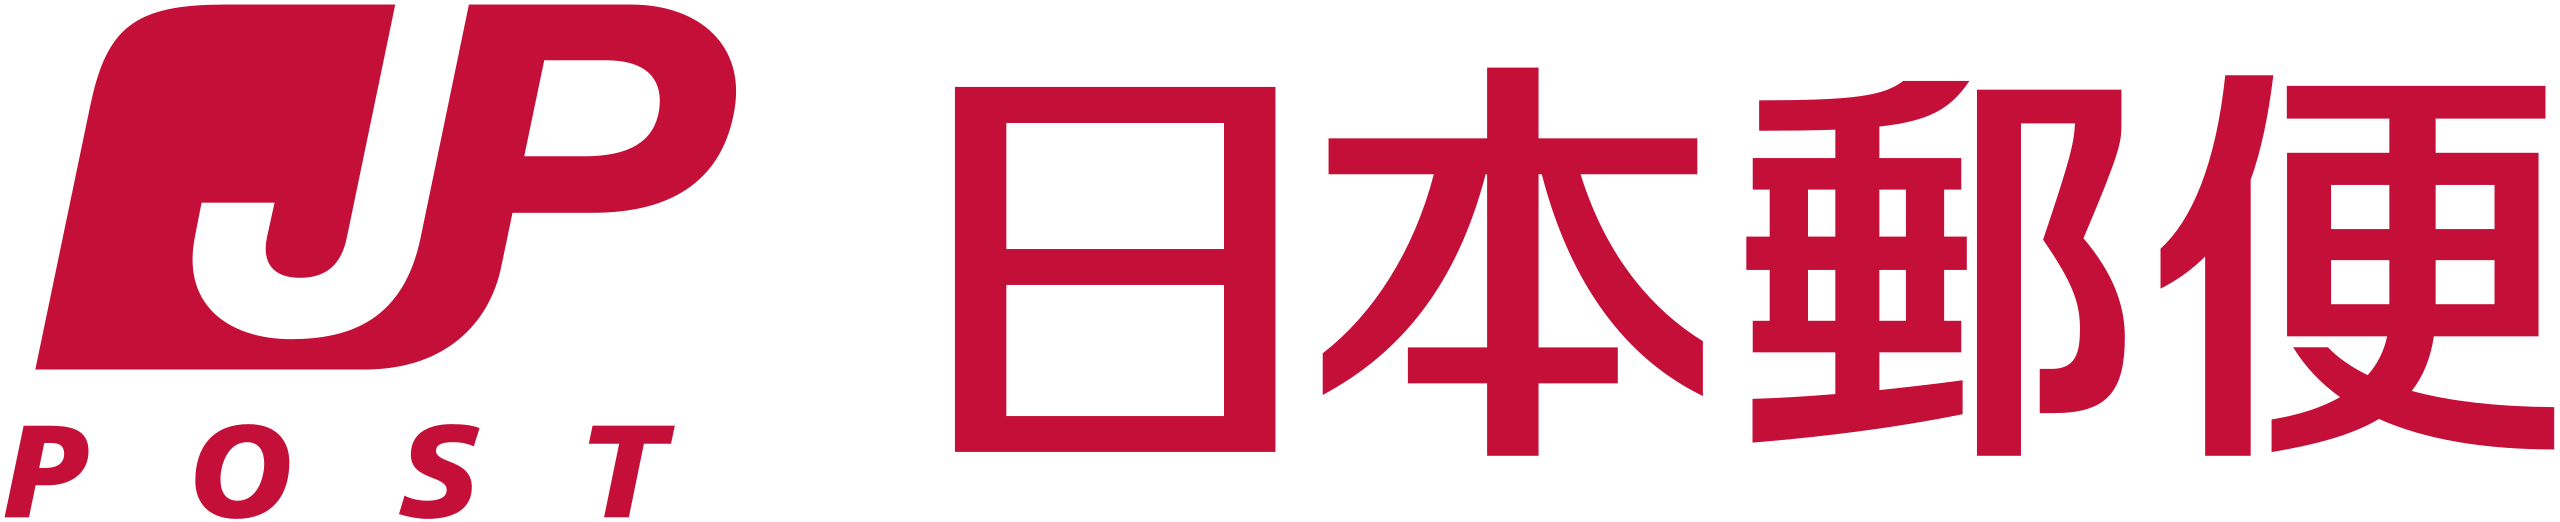 japan_post_service_logo.svg.png